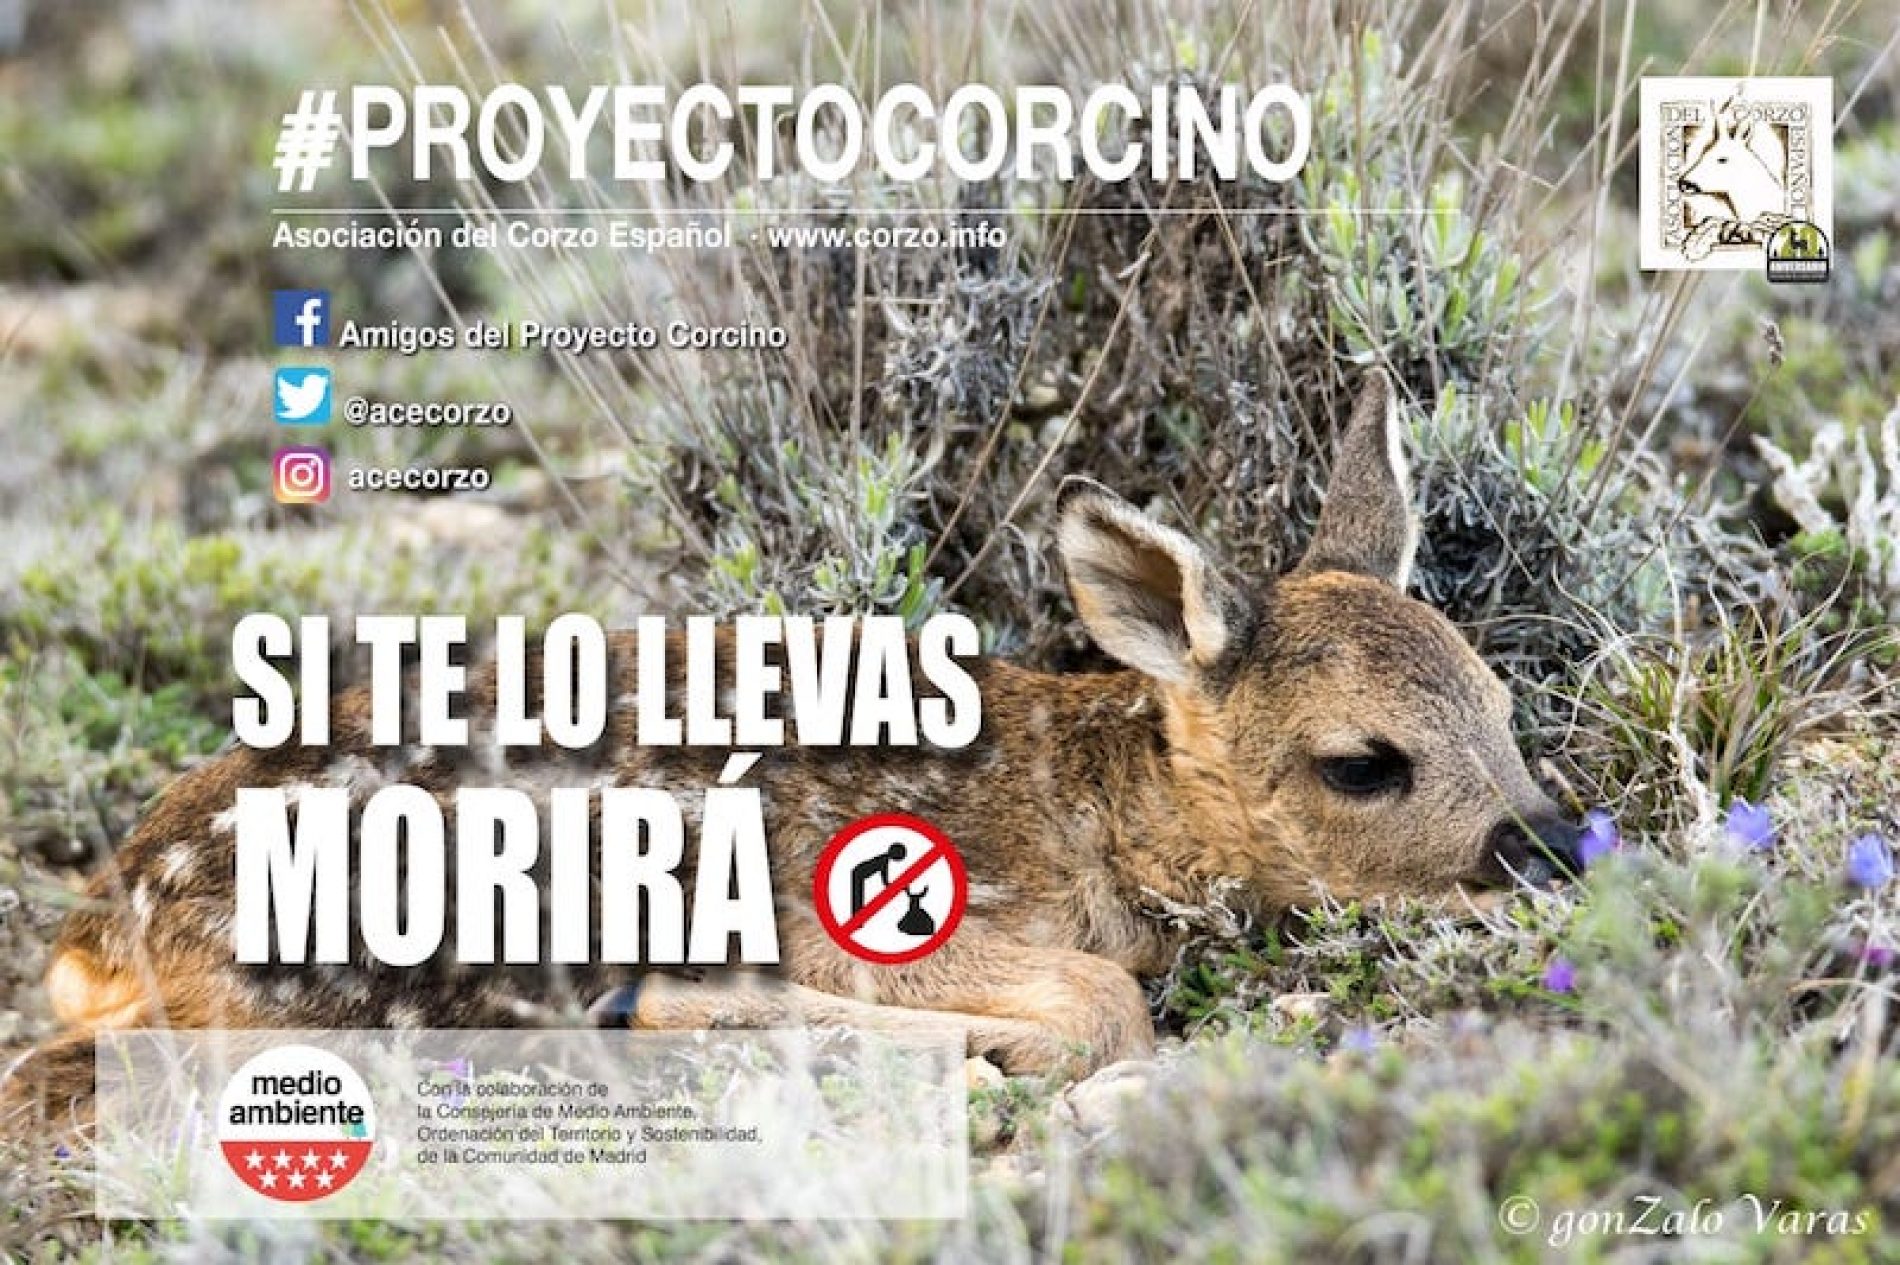 La Asociación del Corzo Español pone en marcha la XXII campaña “proyecto corcino”.